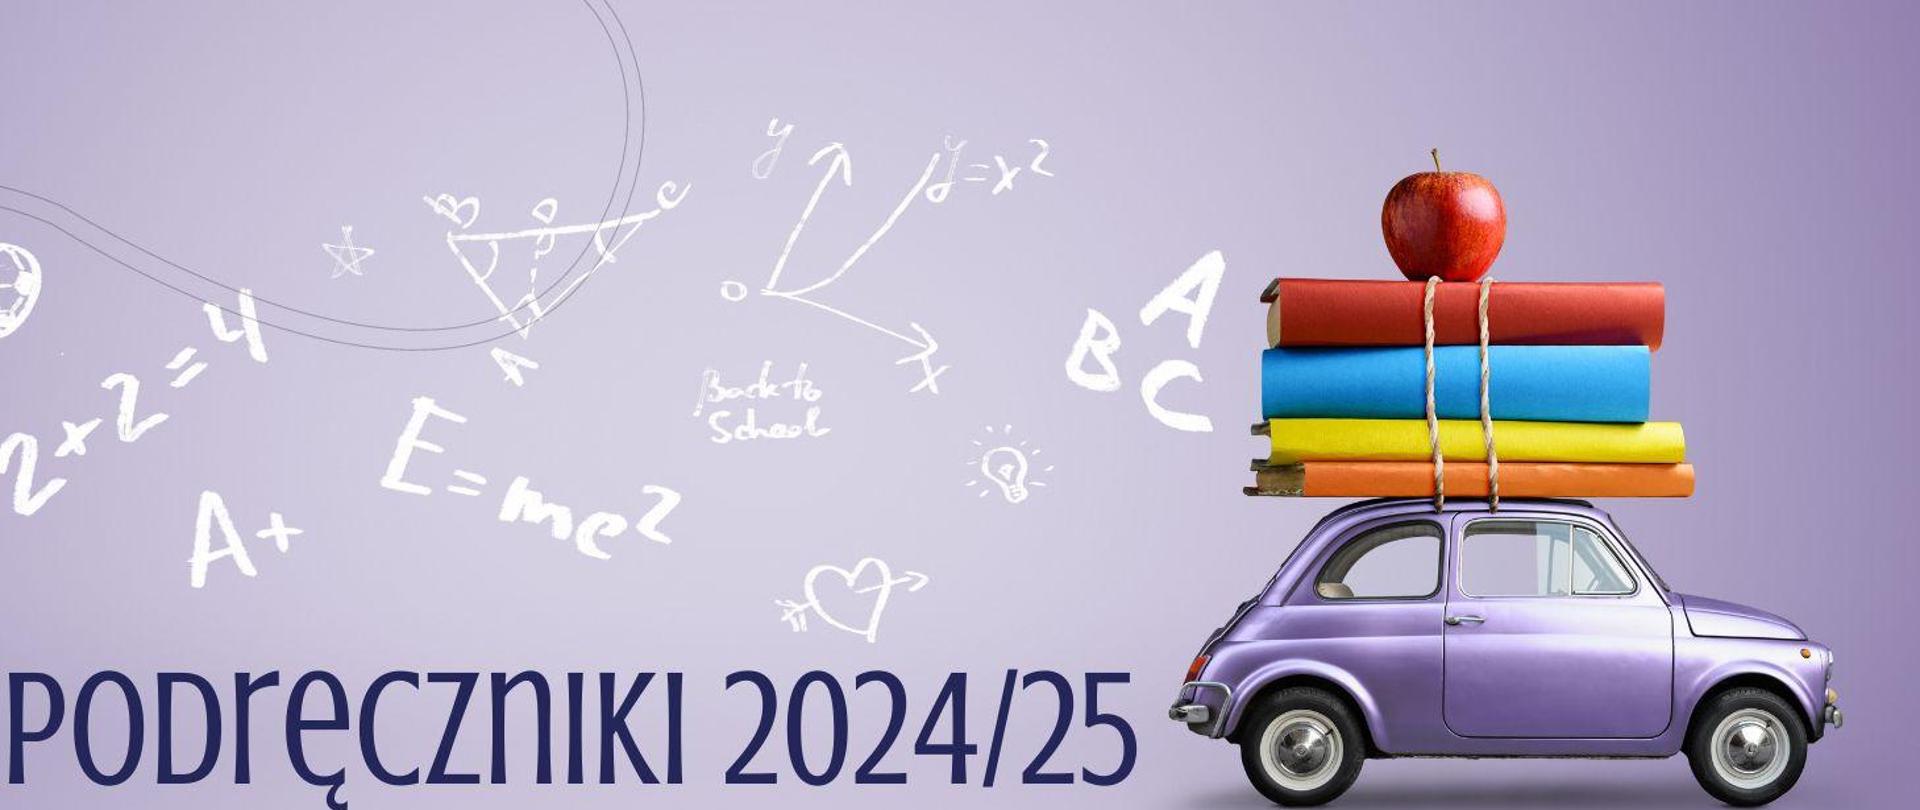 Plakat przedstawiający listę podreczników w roku szkolnym 2024/2025. Fioletowe tło, po prawej stronie samochód w kolorze metalicznej lawendy, a na nim ksiązki i jabłko przywiązane u góry. Po lewej stronie białe symbole matematyczne i wzory fizyczne.